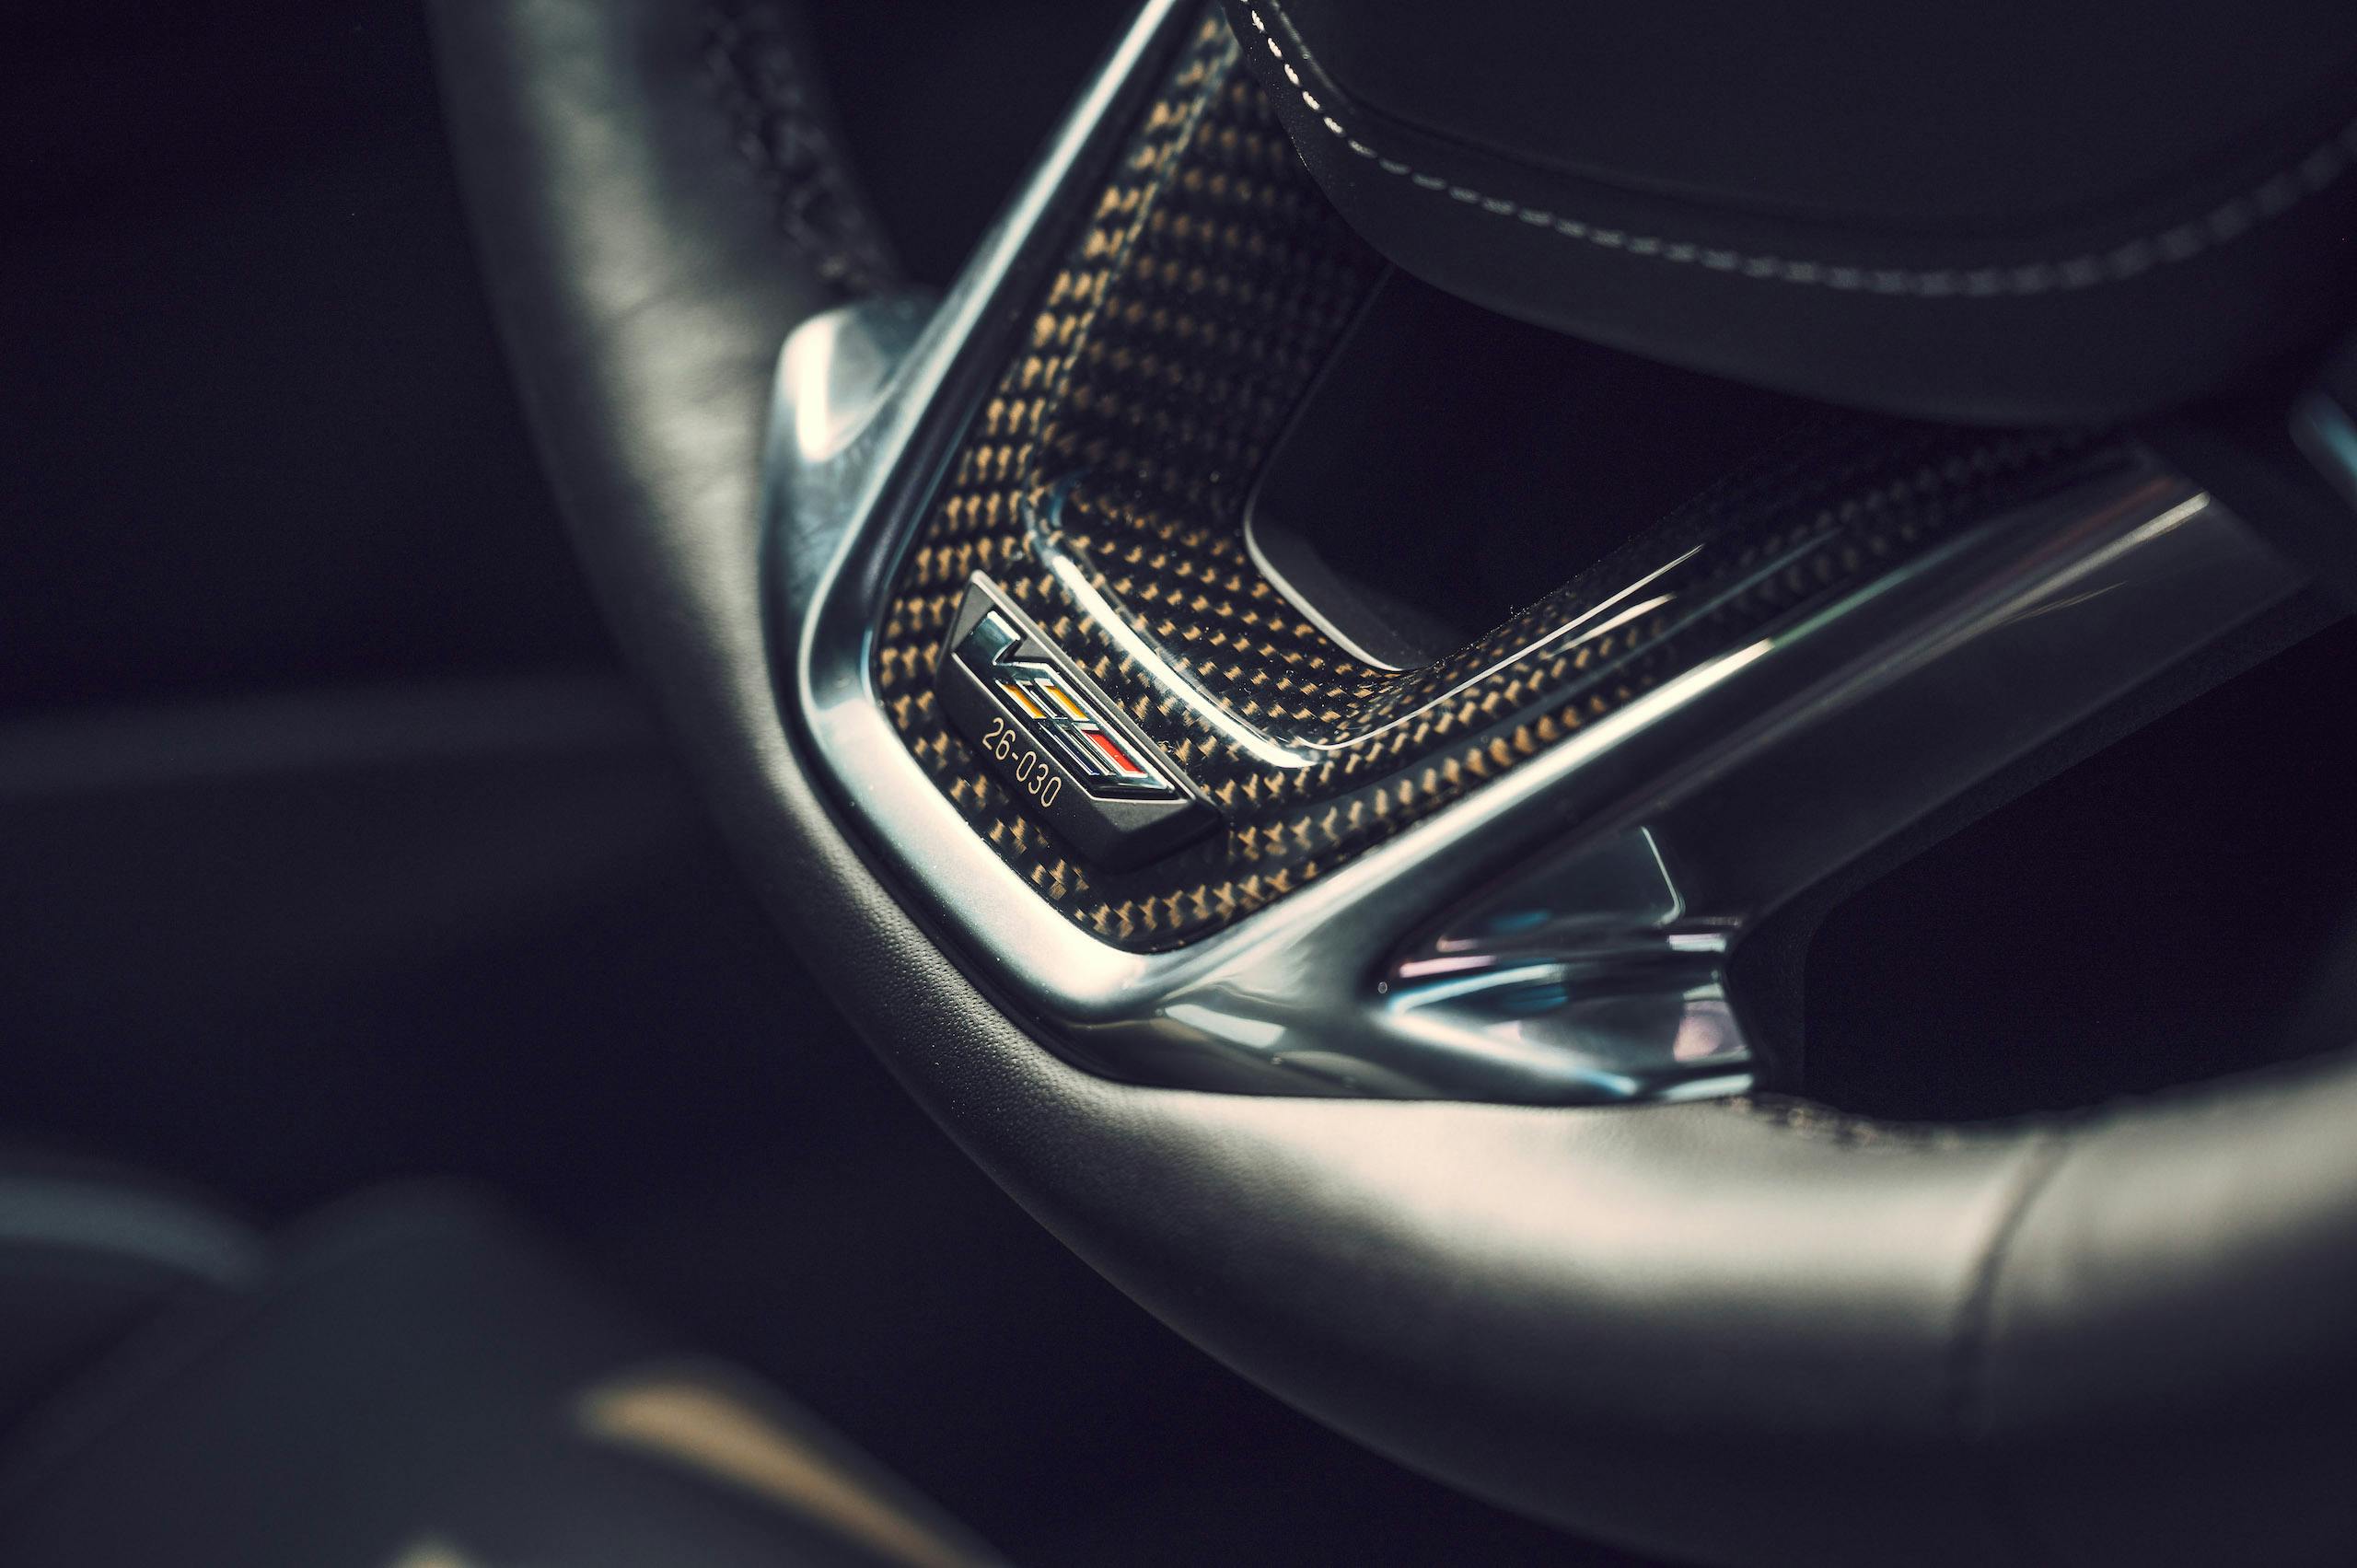 CT4-V Blackwing steering wheel detail